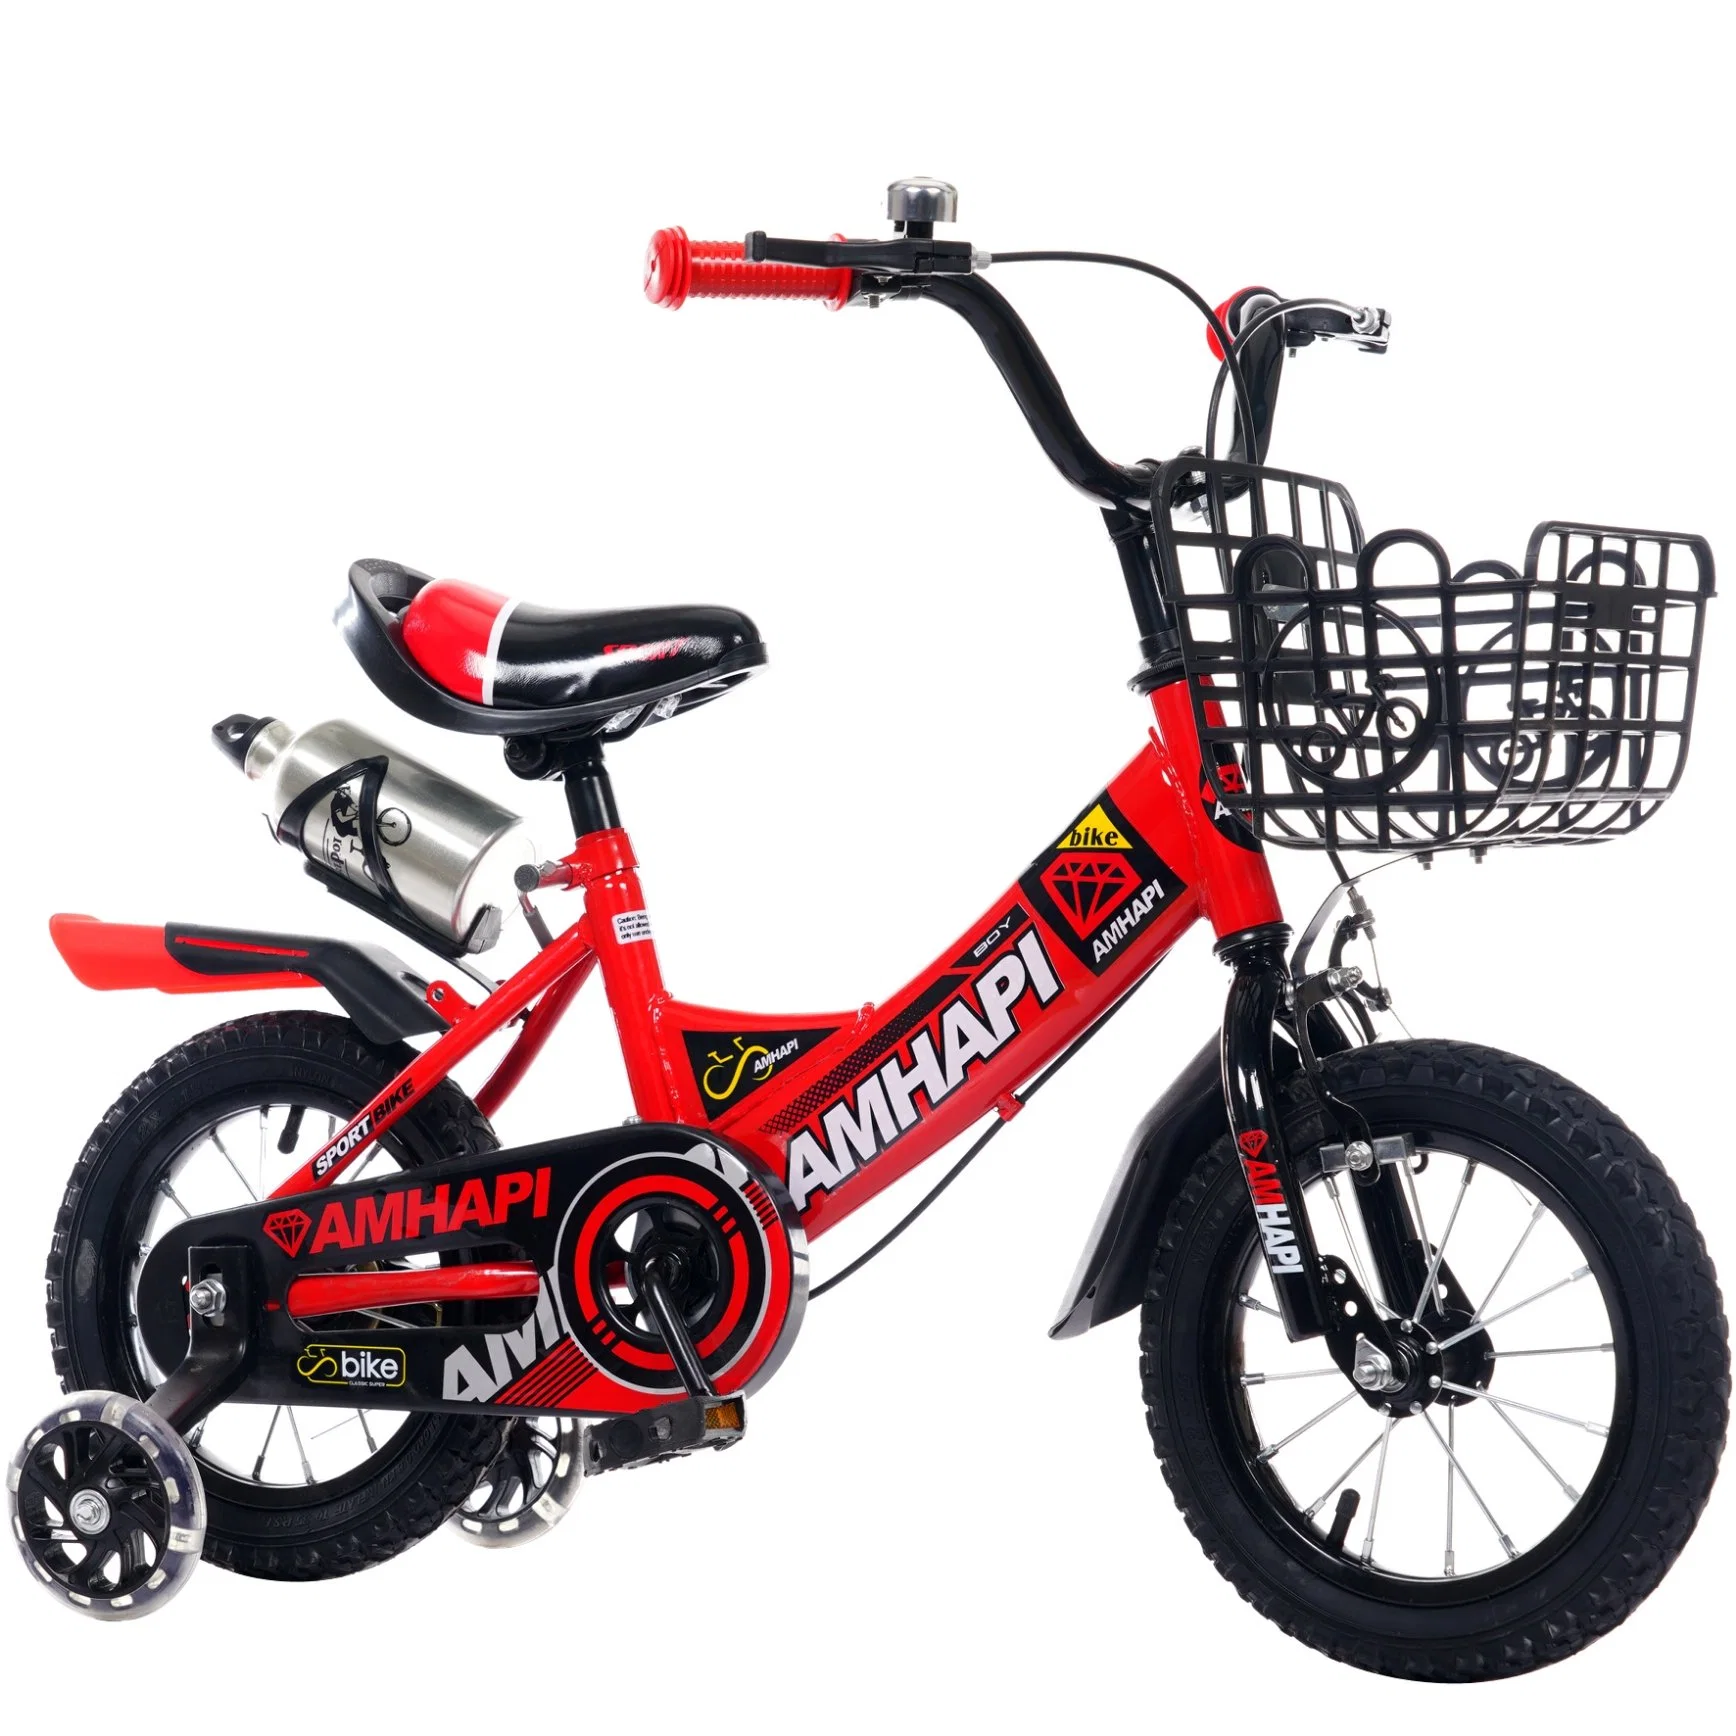 Ce Kids Bikes pour enfant de 10 ans / bébé OEM Enfants Vélo Sepeda Anak/ stock 12/16/20 pouces enfants Vélo